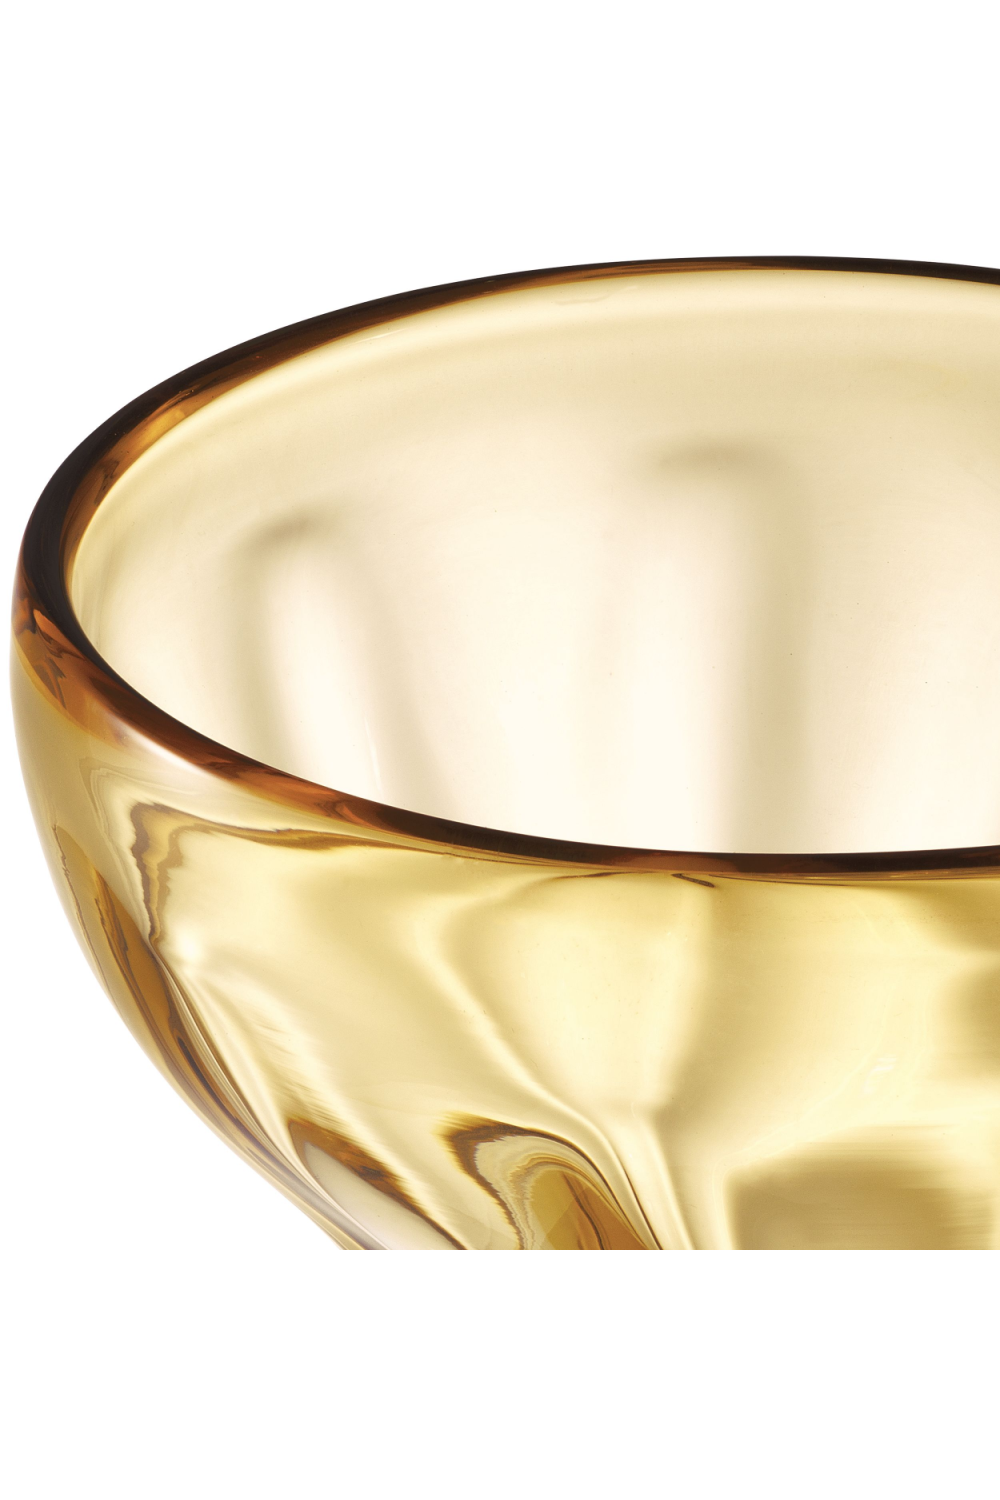 Yellow Hand-Blown Glass Vase | Eichholtz Angelia | OROA.com